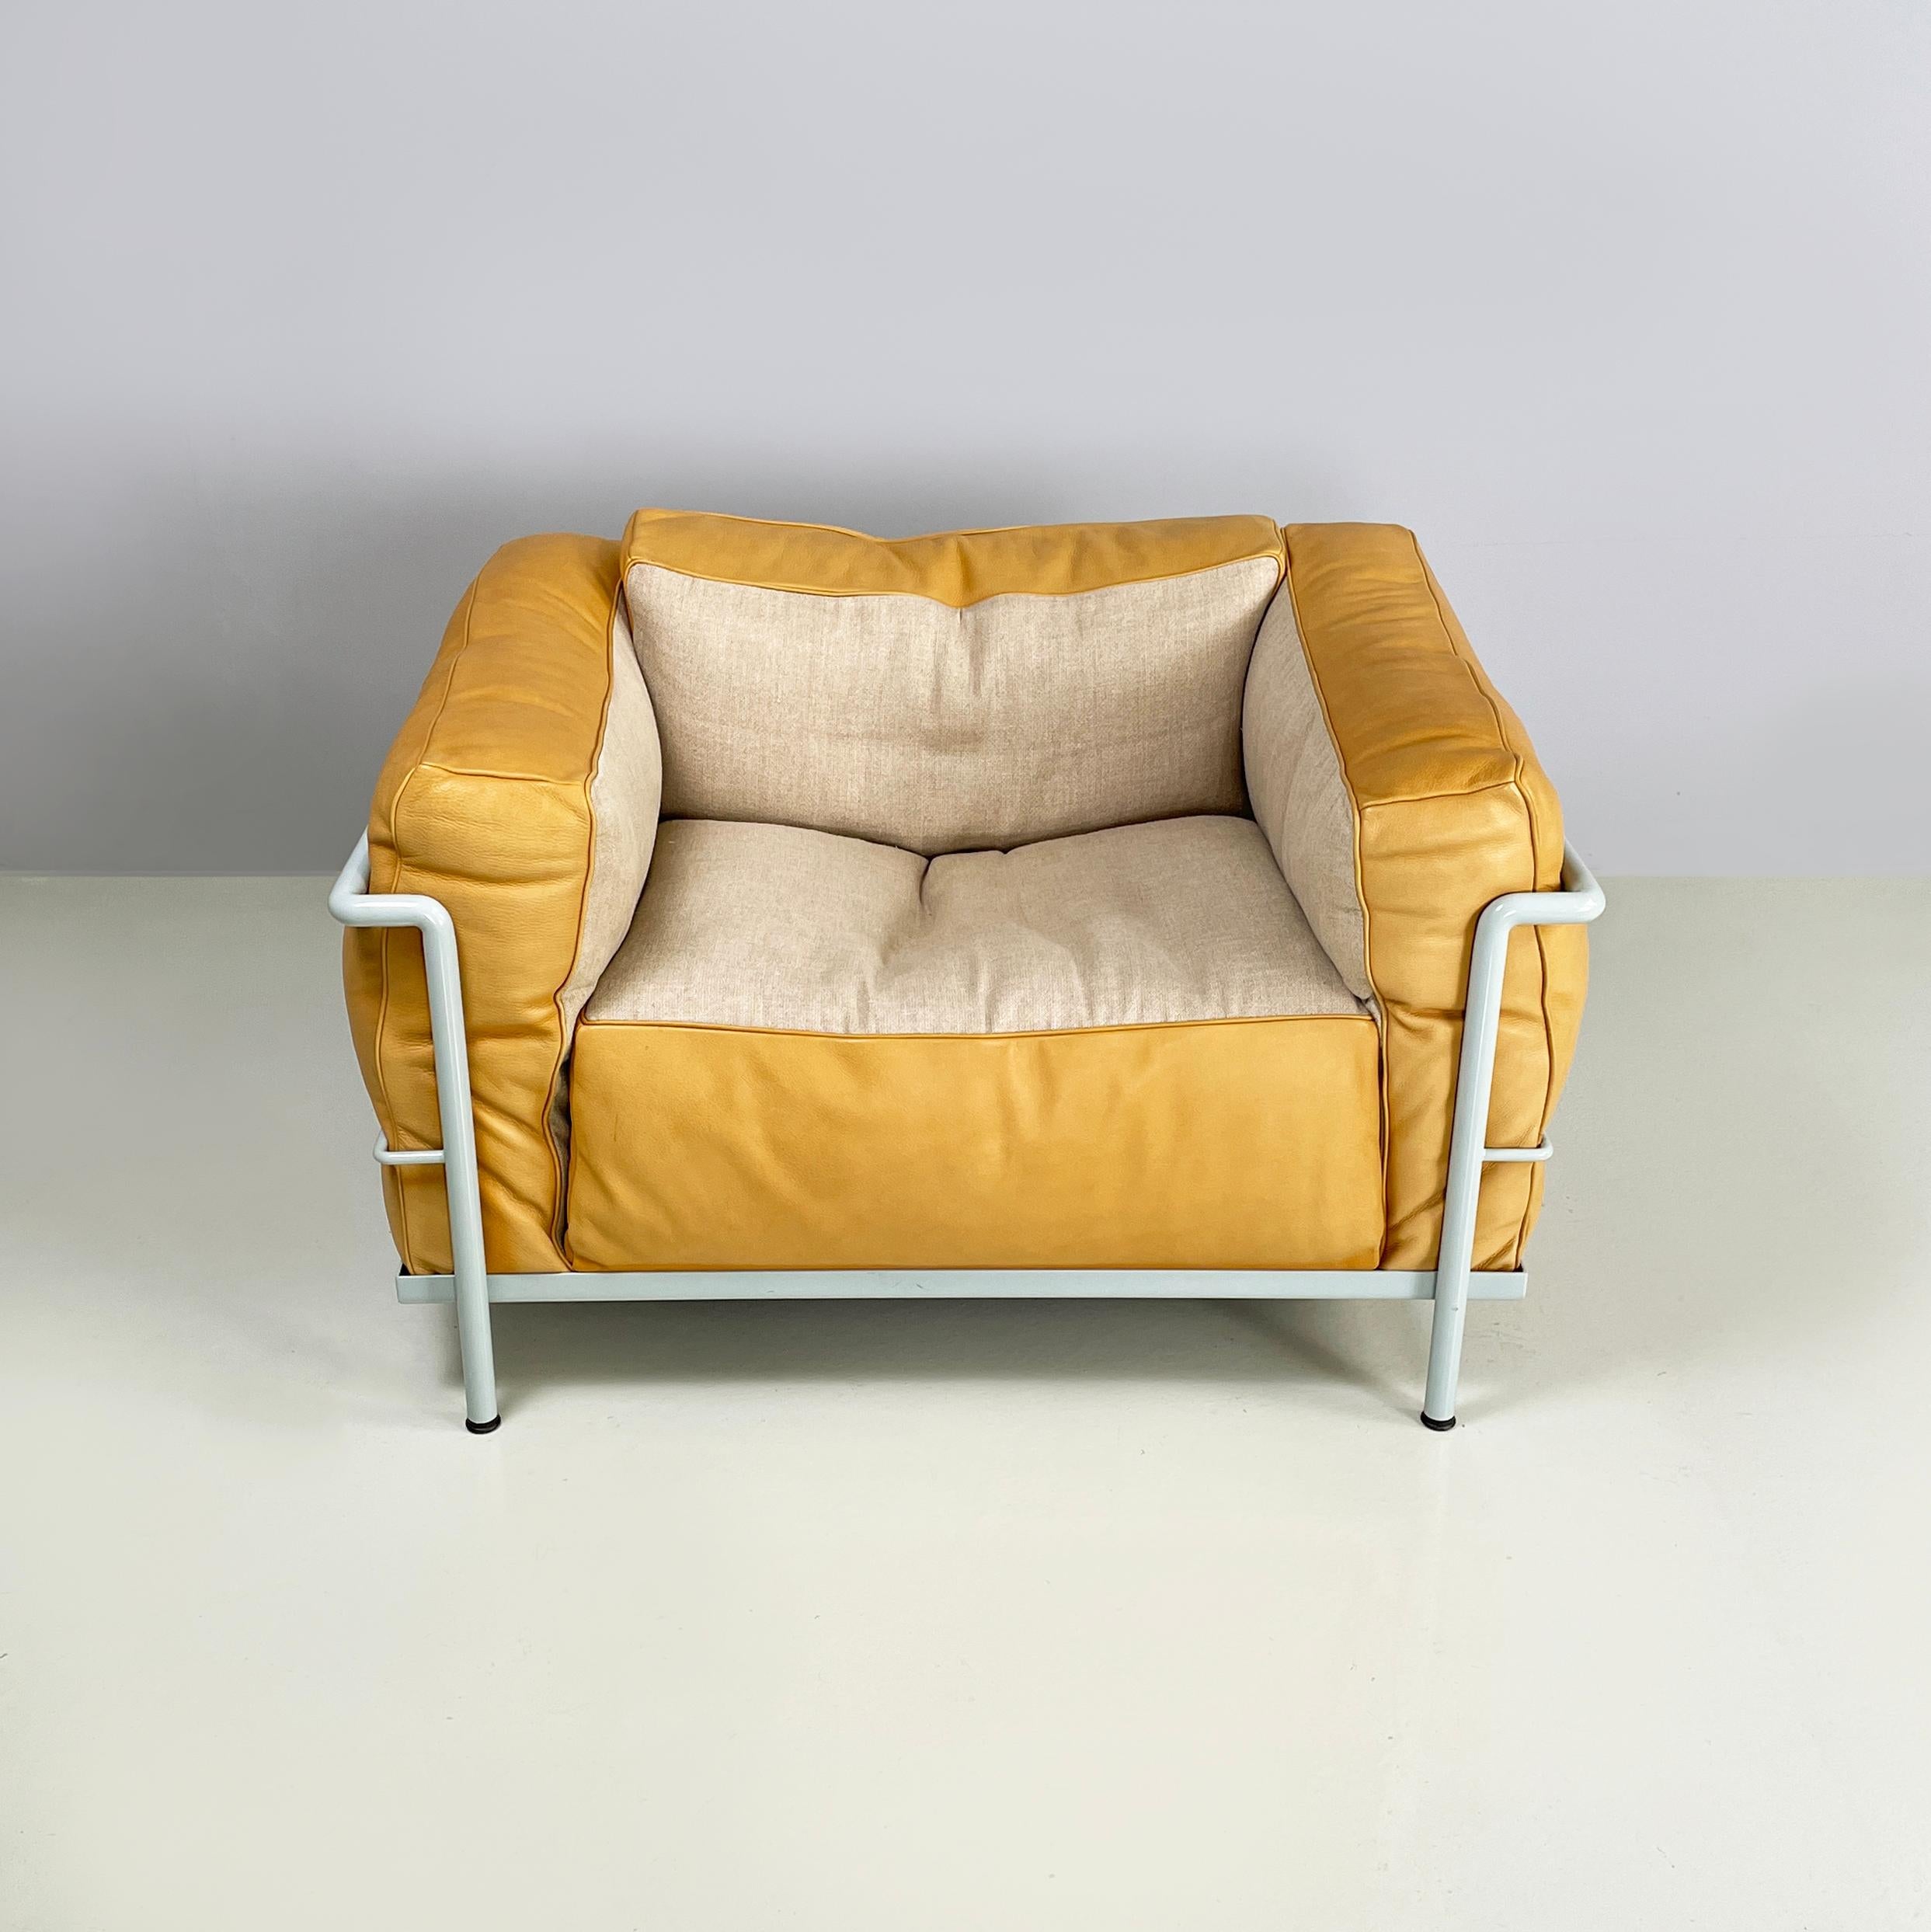 Italienischer moderner Sessel LC3 von Le Corbusier, Jeanneret und Perriand für Cassina, 2008
Eleganter Sessel Mod. LC3 mit Metallrohrgestell in hellblau lackiert. Das Quadrat  Der Sitz, die Rückenlehne und die Armlehnen sind gepolstert und außen mit